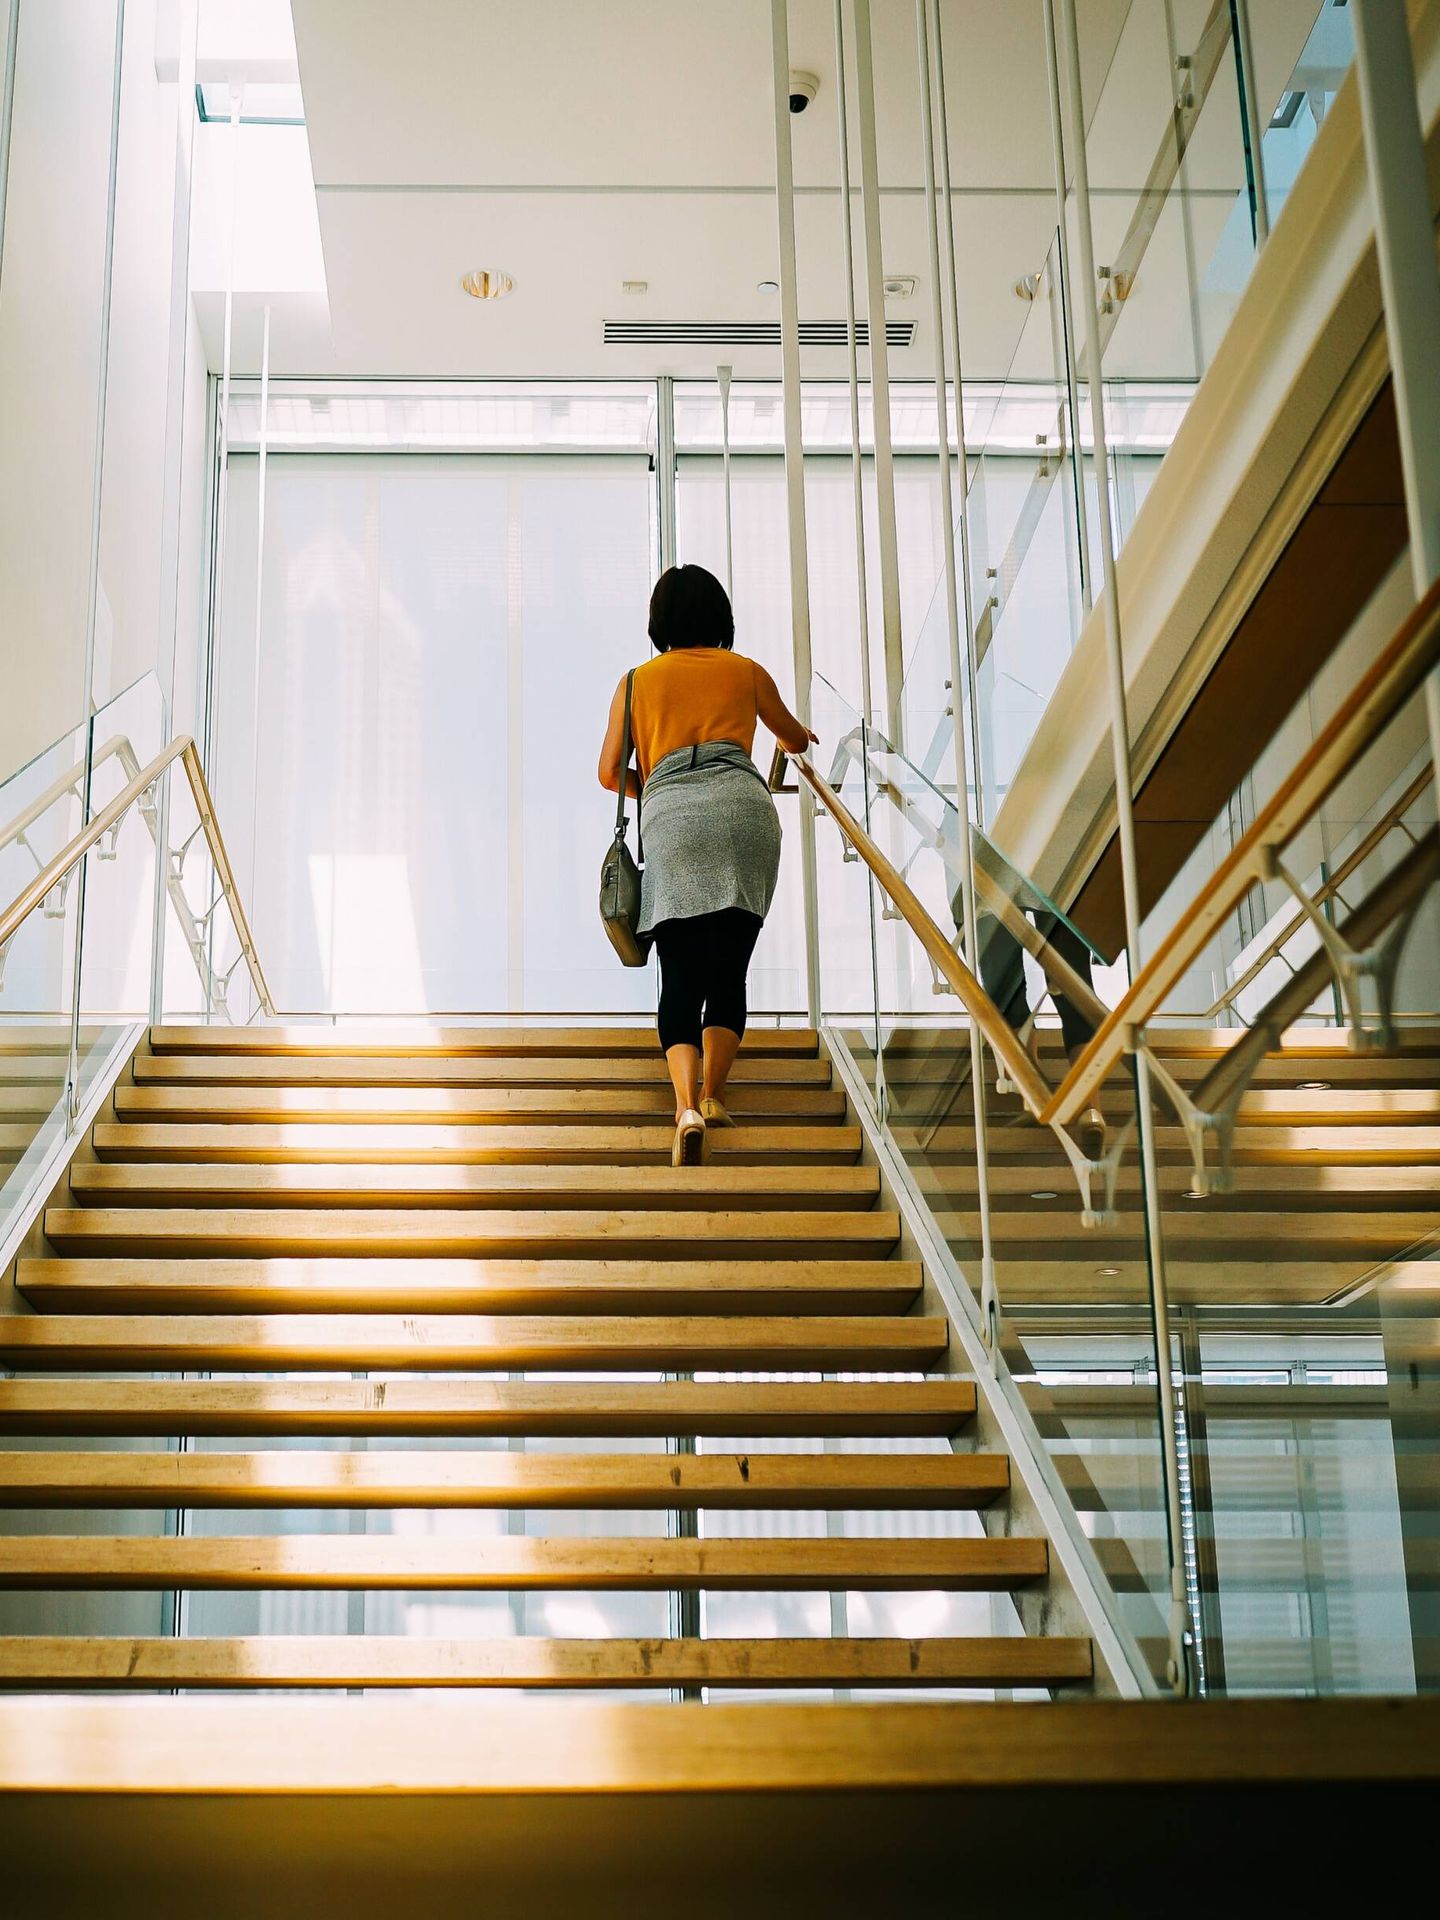 Subir escaleras, una de las mejores actividades para ponerte en forma sin ir al gimnasio. (Pexels/Ricky Esquivel)